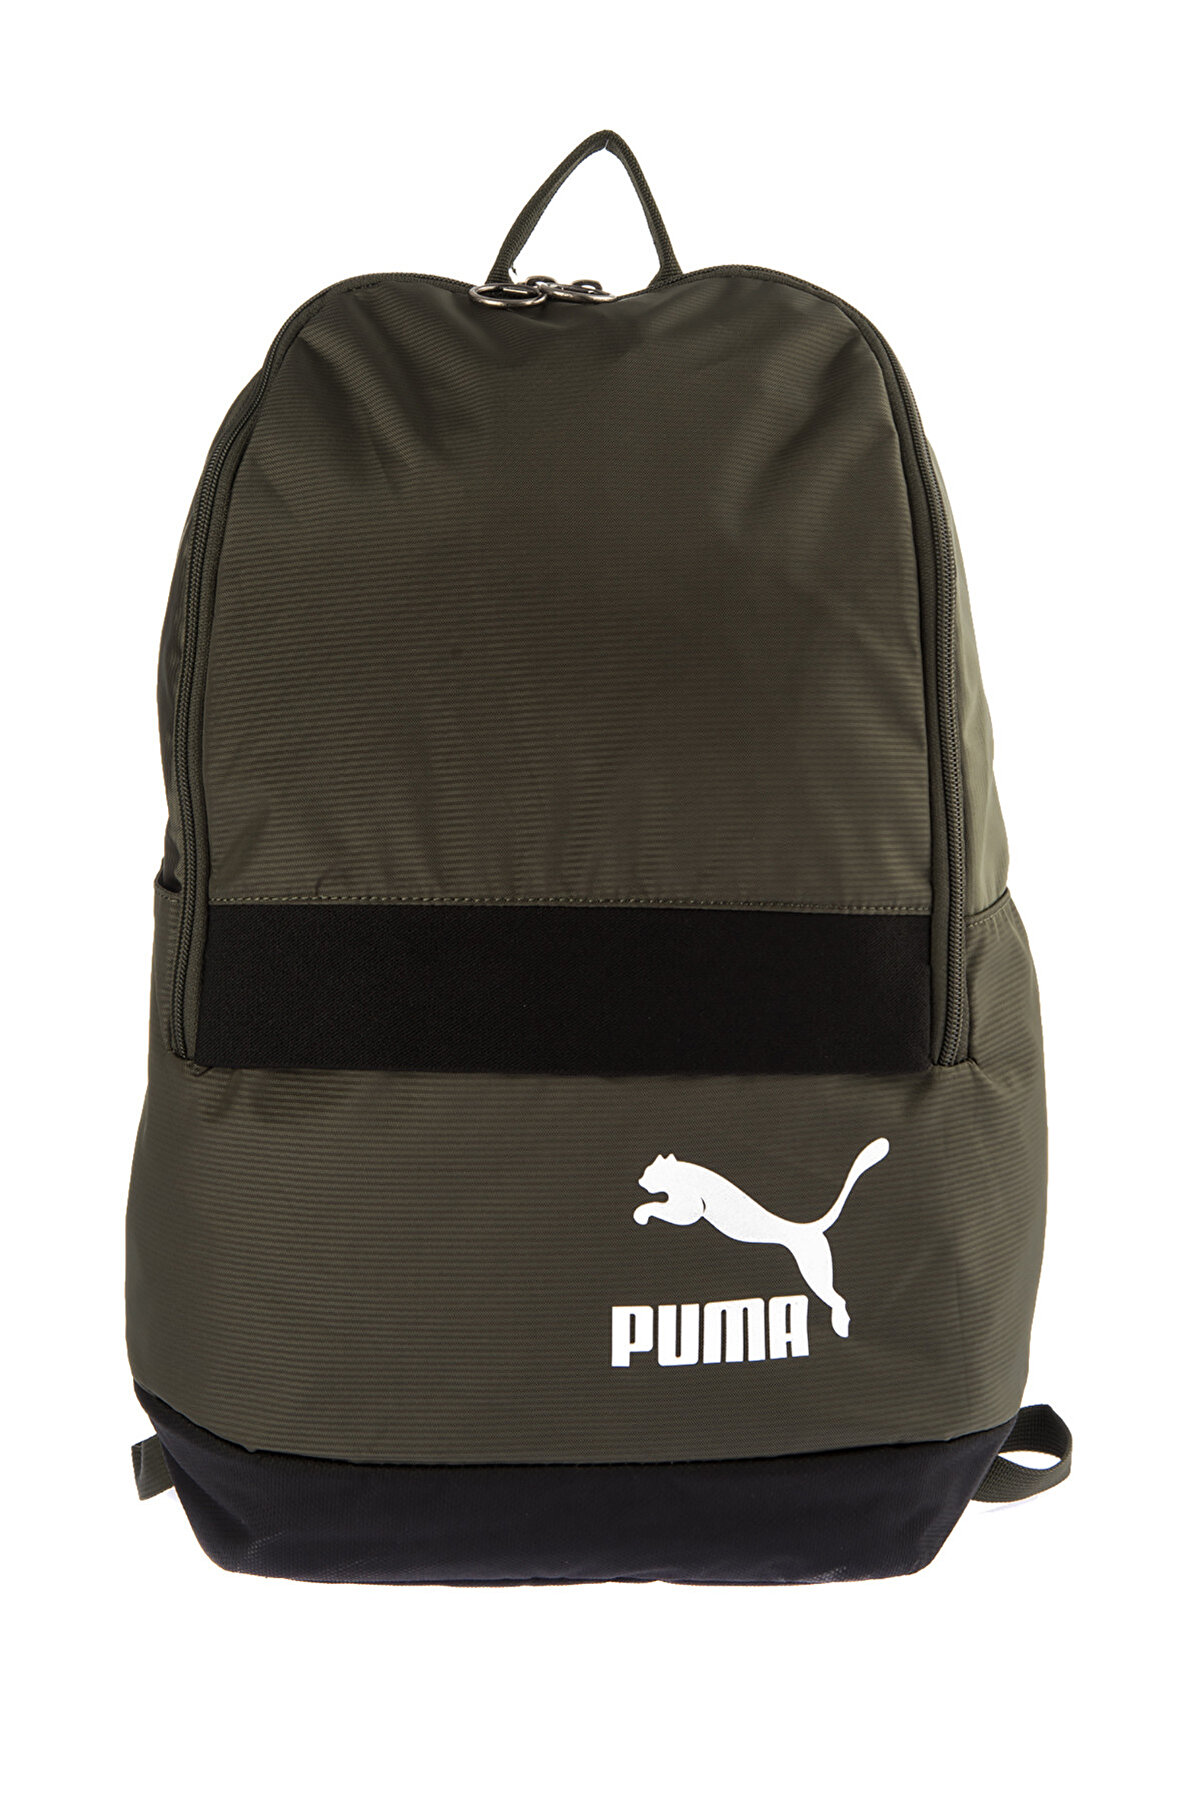 Puma Unisex Sırt Çantası - Originals Backpack Tren - 07544202